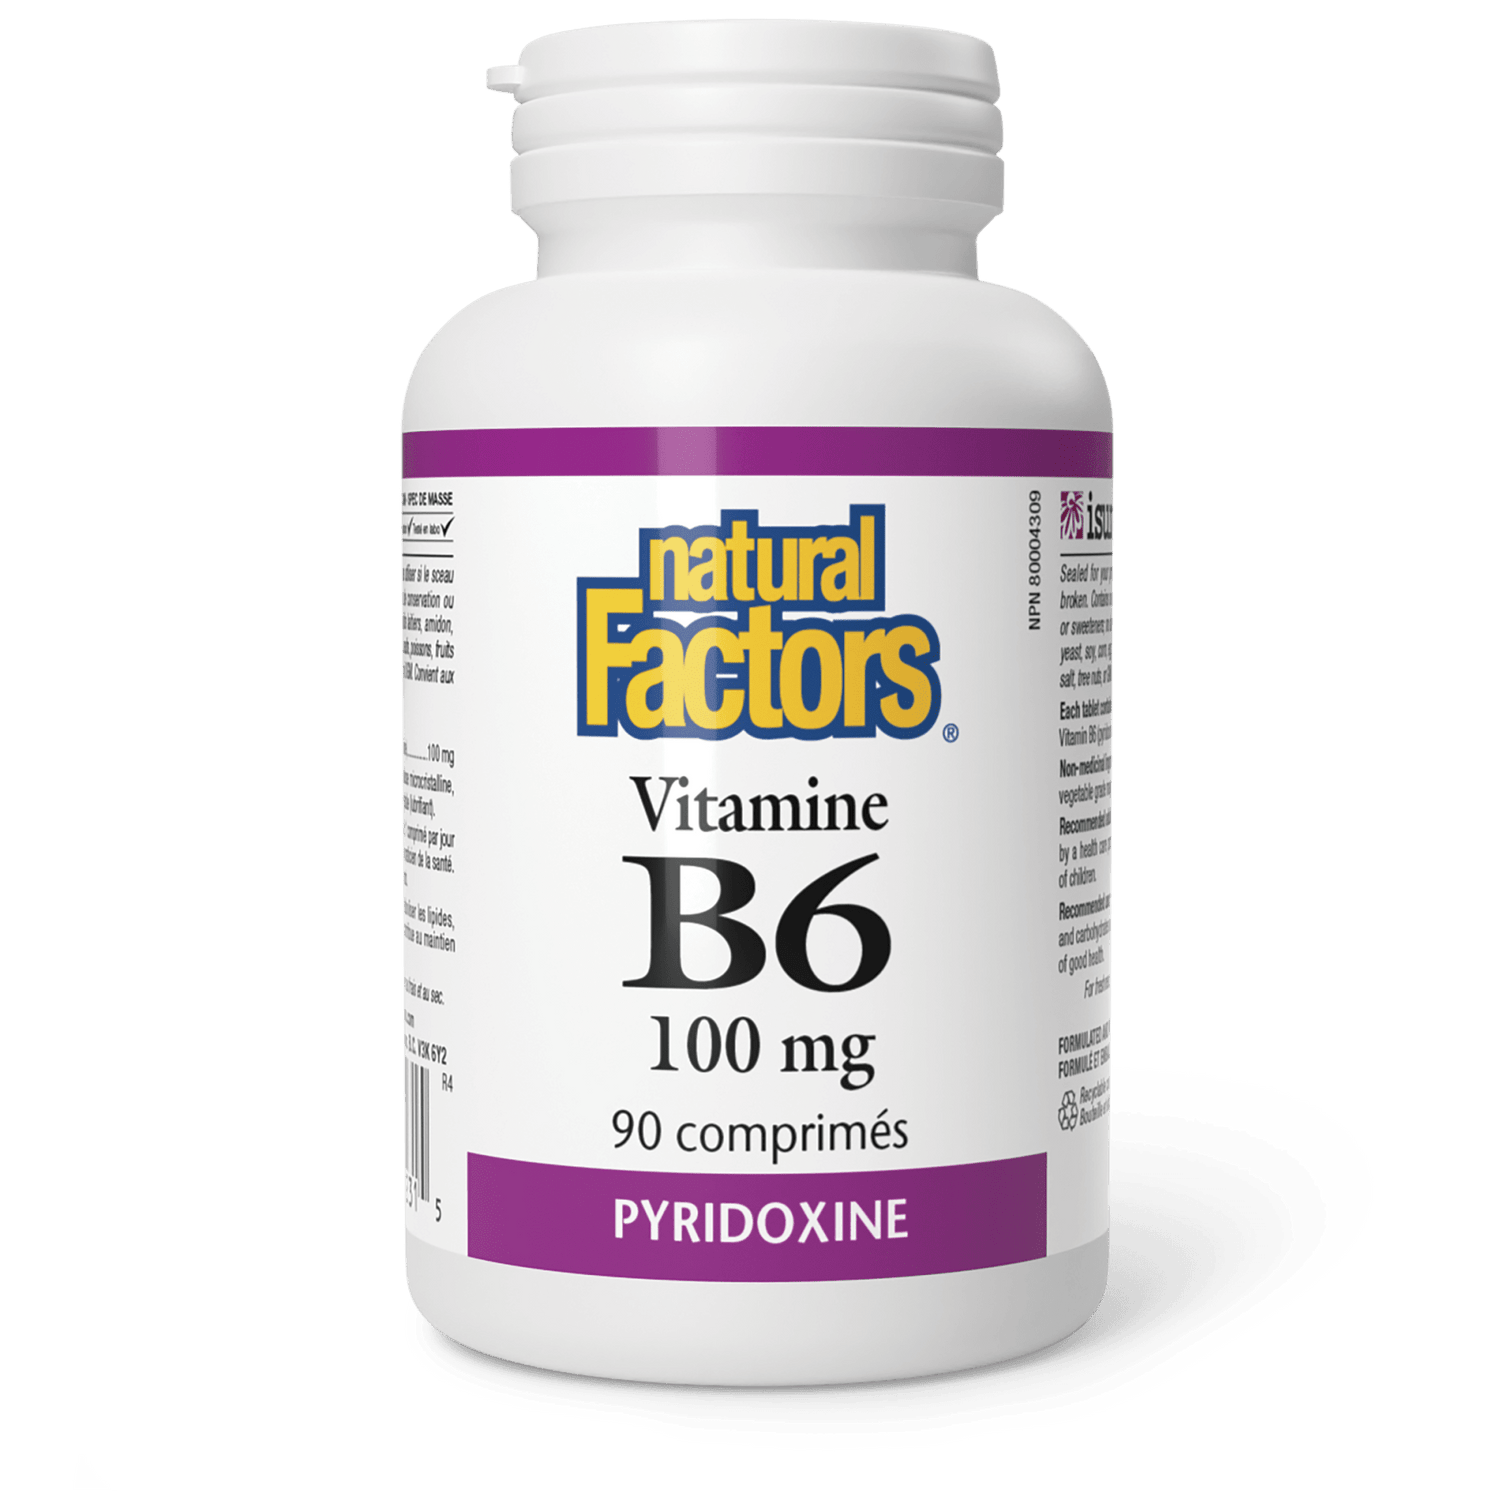 Vitamine B6 100 mg, Natural Factors|v|image|1231